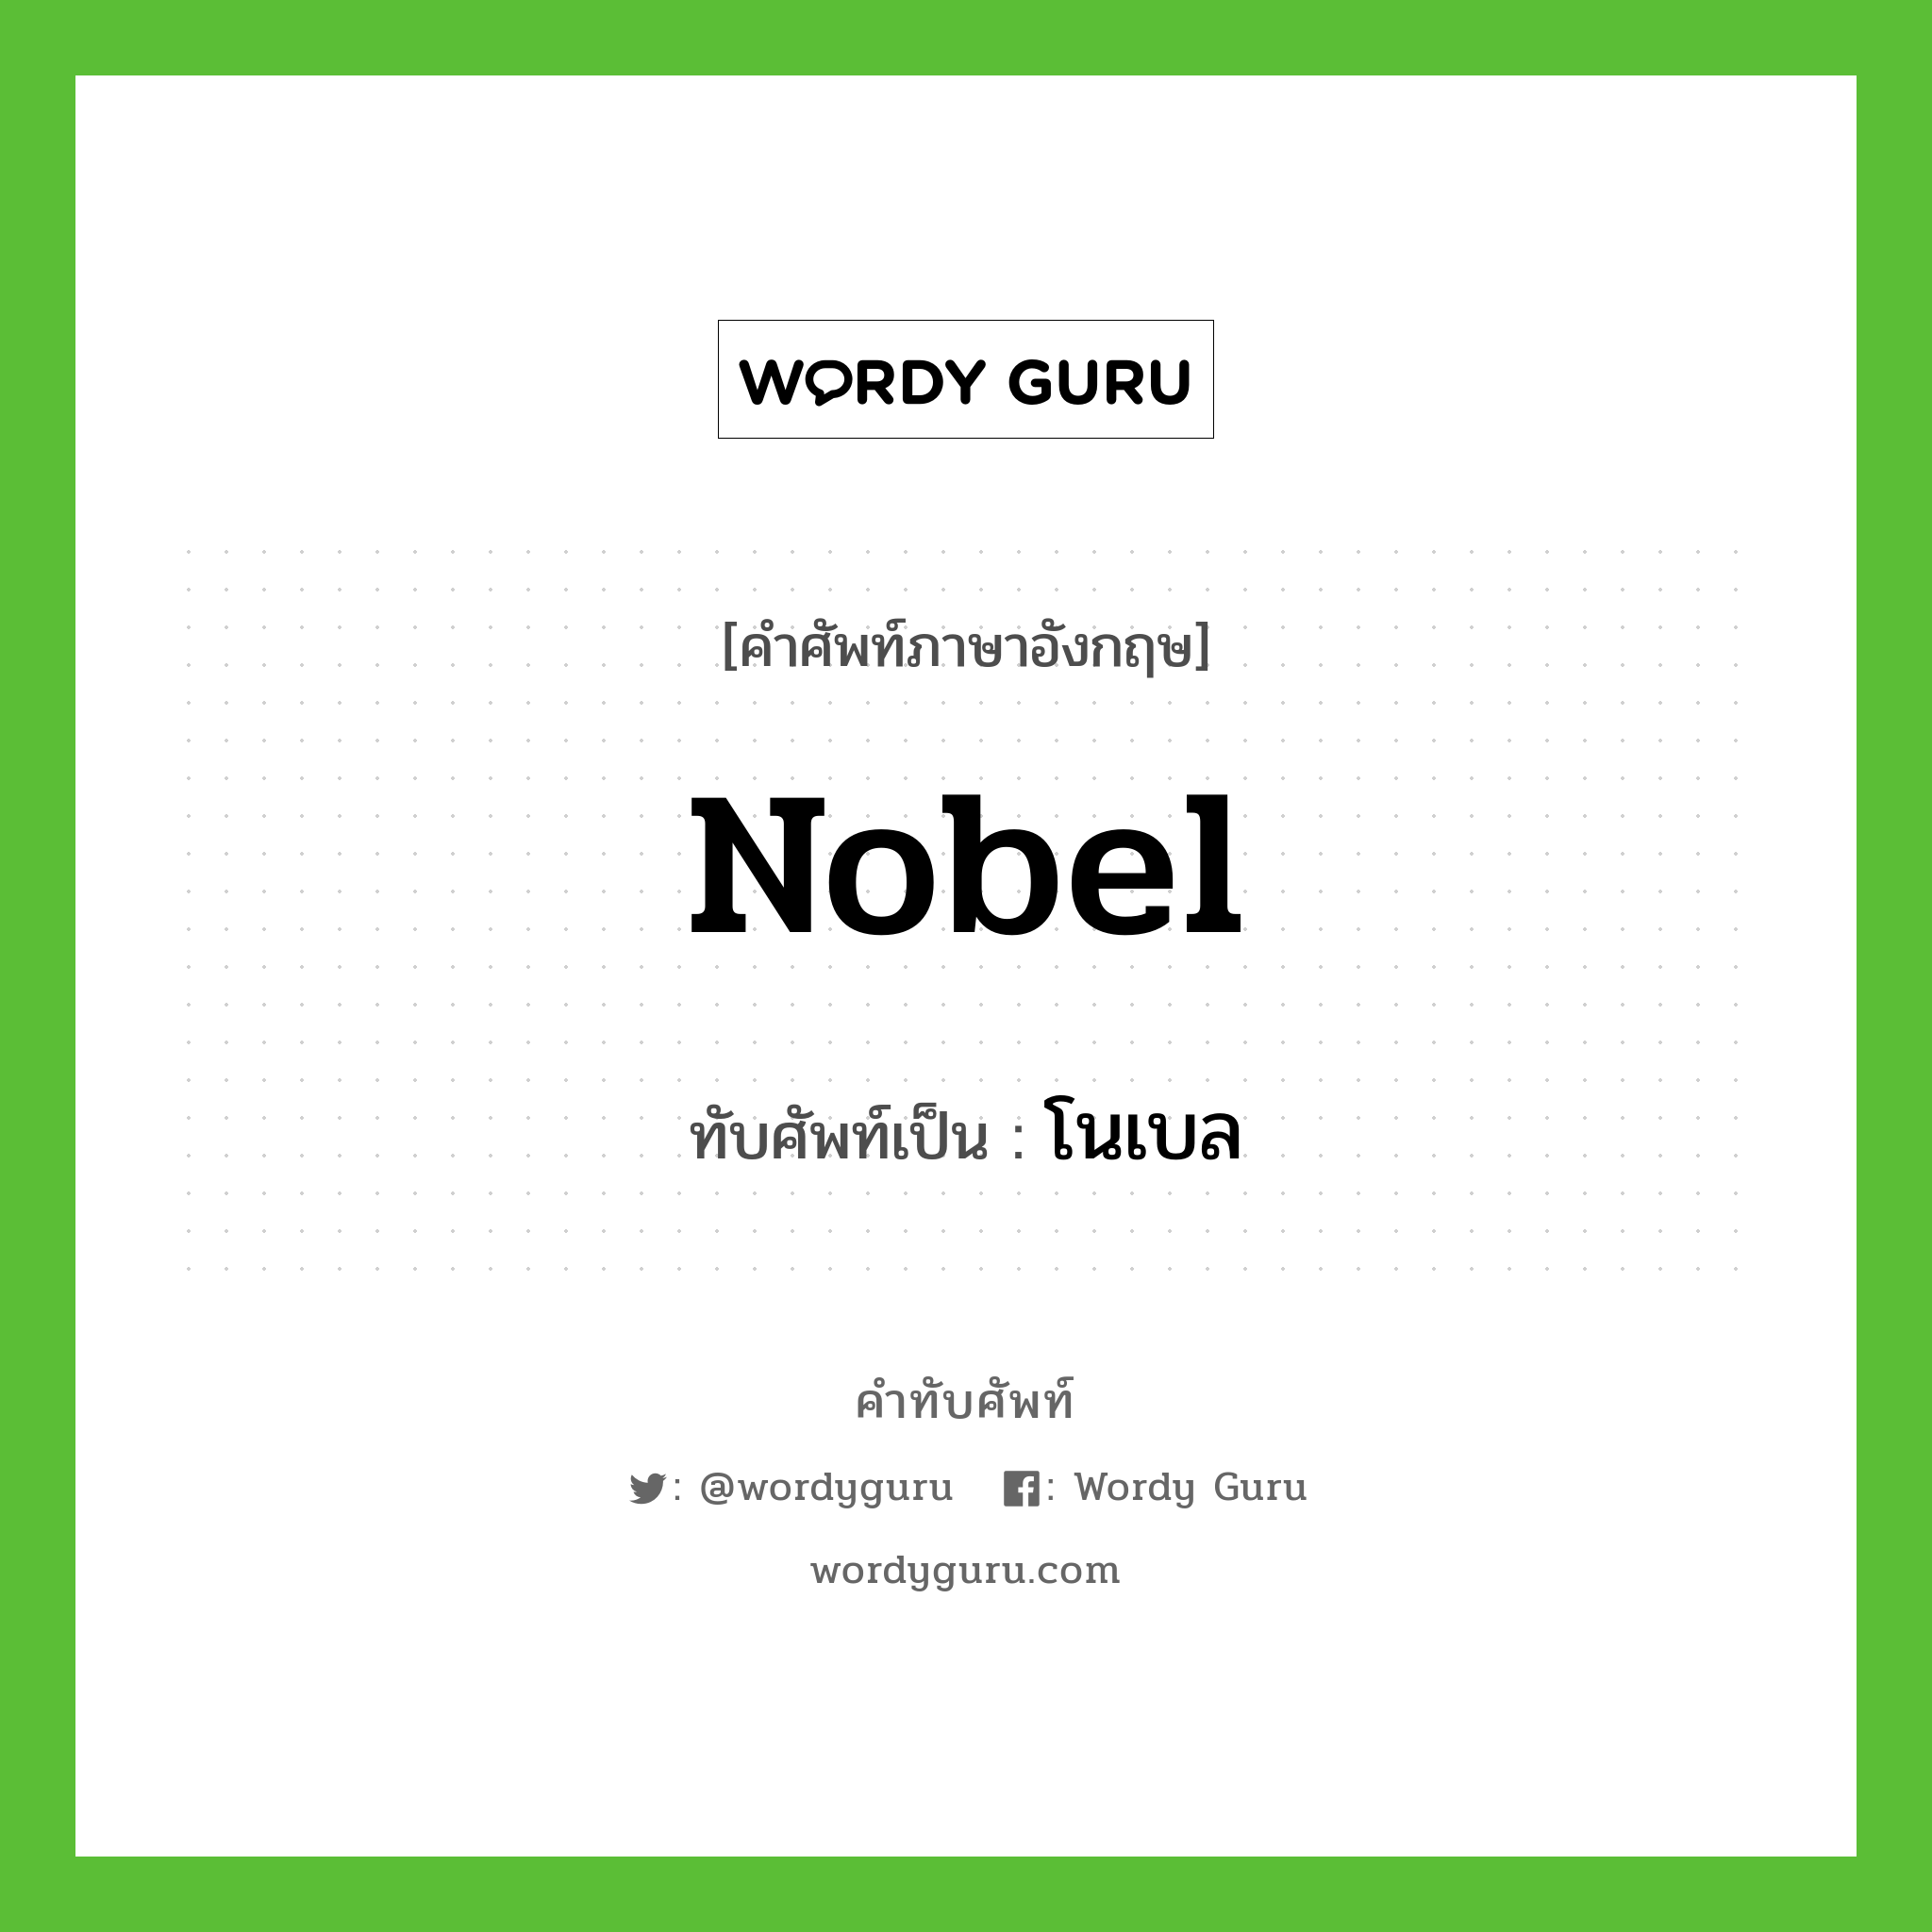 โนเบล เขียนอย่างไร?, คำศัพท์ภาษาอังกฤษ โนเบล ทับศัพท์เป็น Nobel